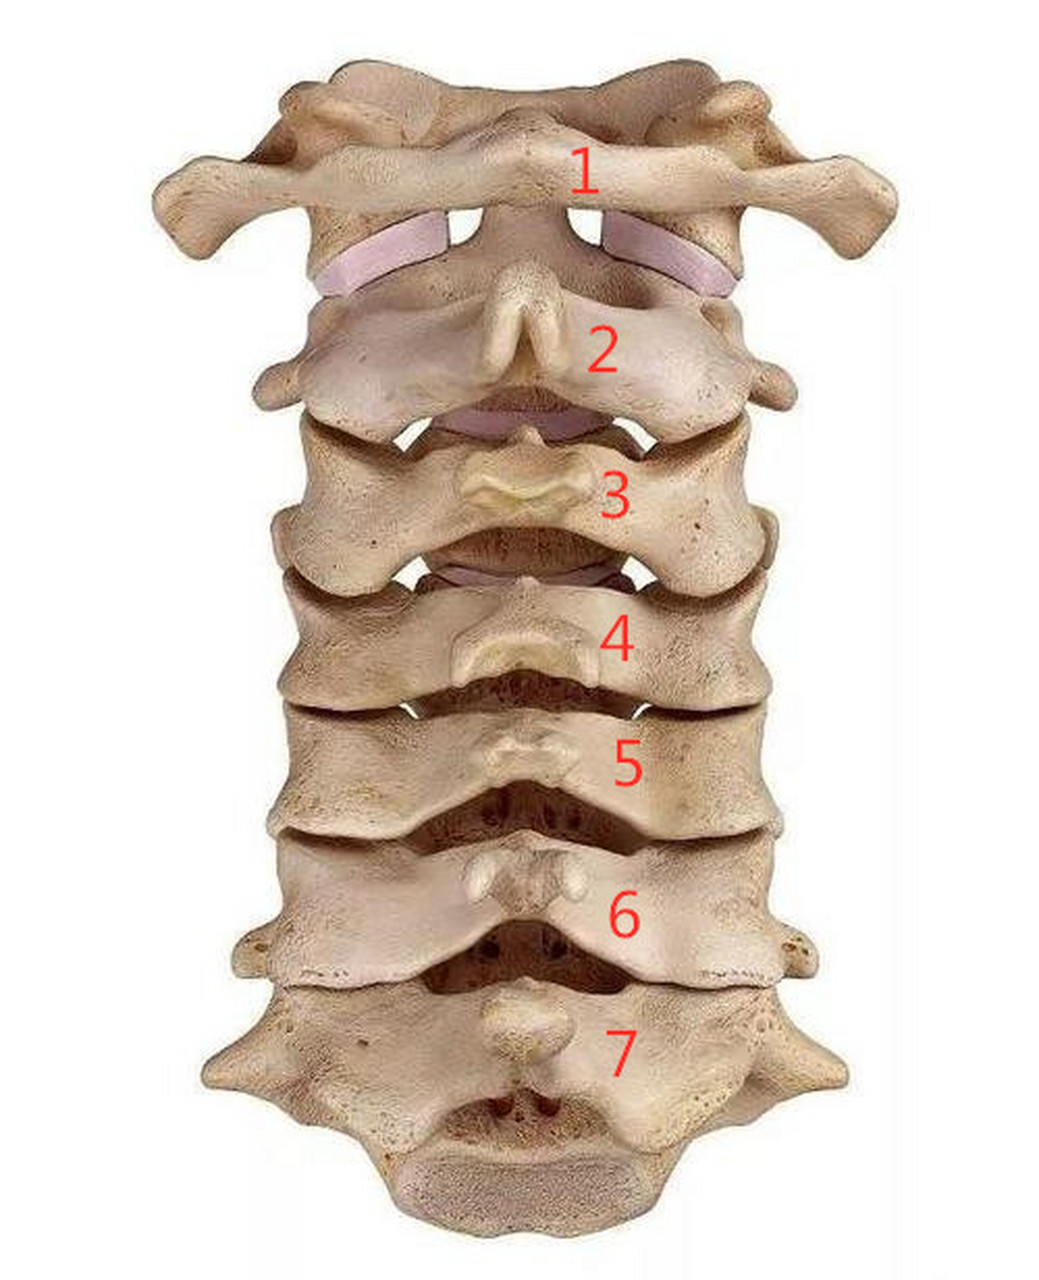 颈椎横突的准确位置图图片